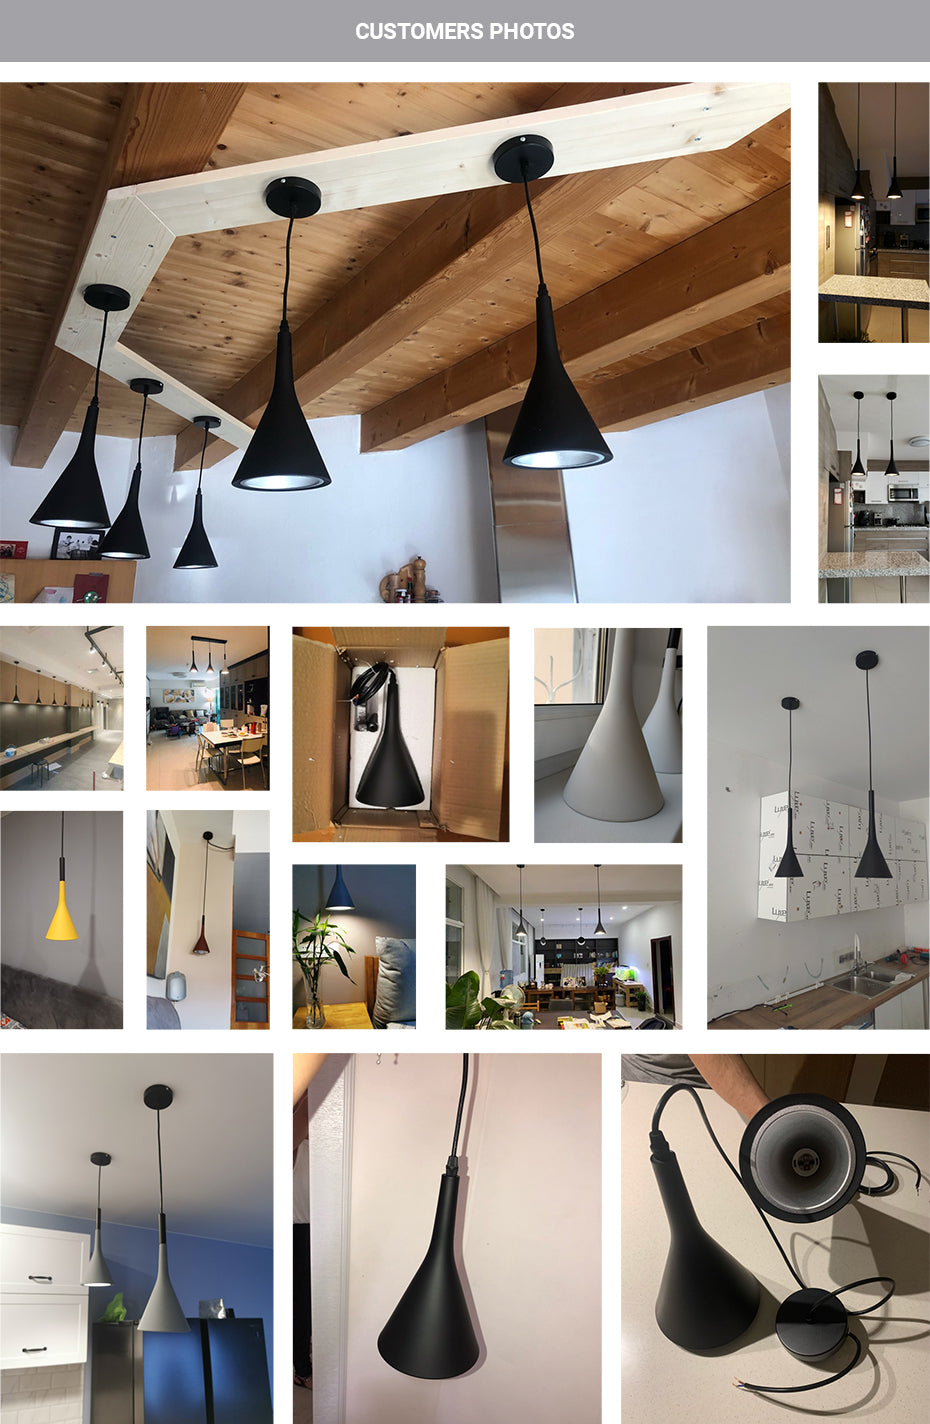 Modern Pendant Lamps Designer Light Fittings For Bedroom Kitchen Living Room Office Study Bar Diner Cafe Restaurant Hanging Lights in 8 Colors